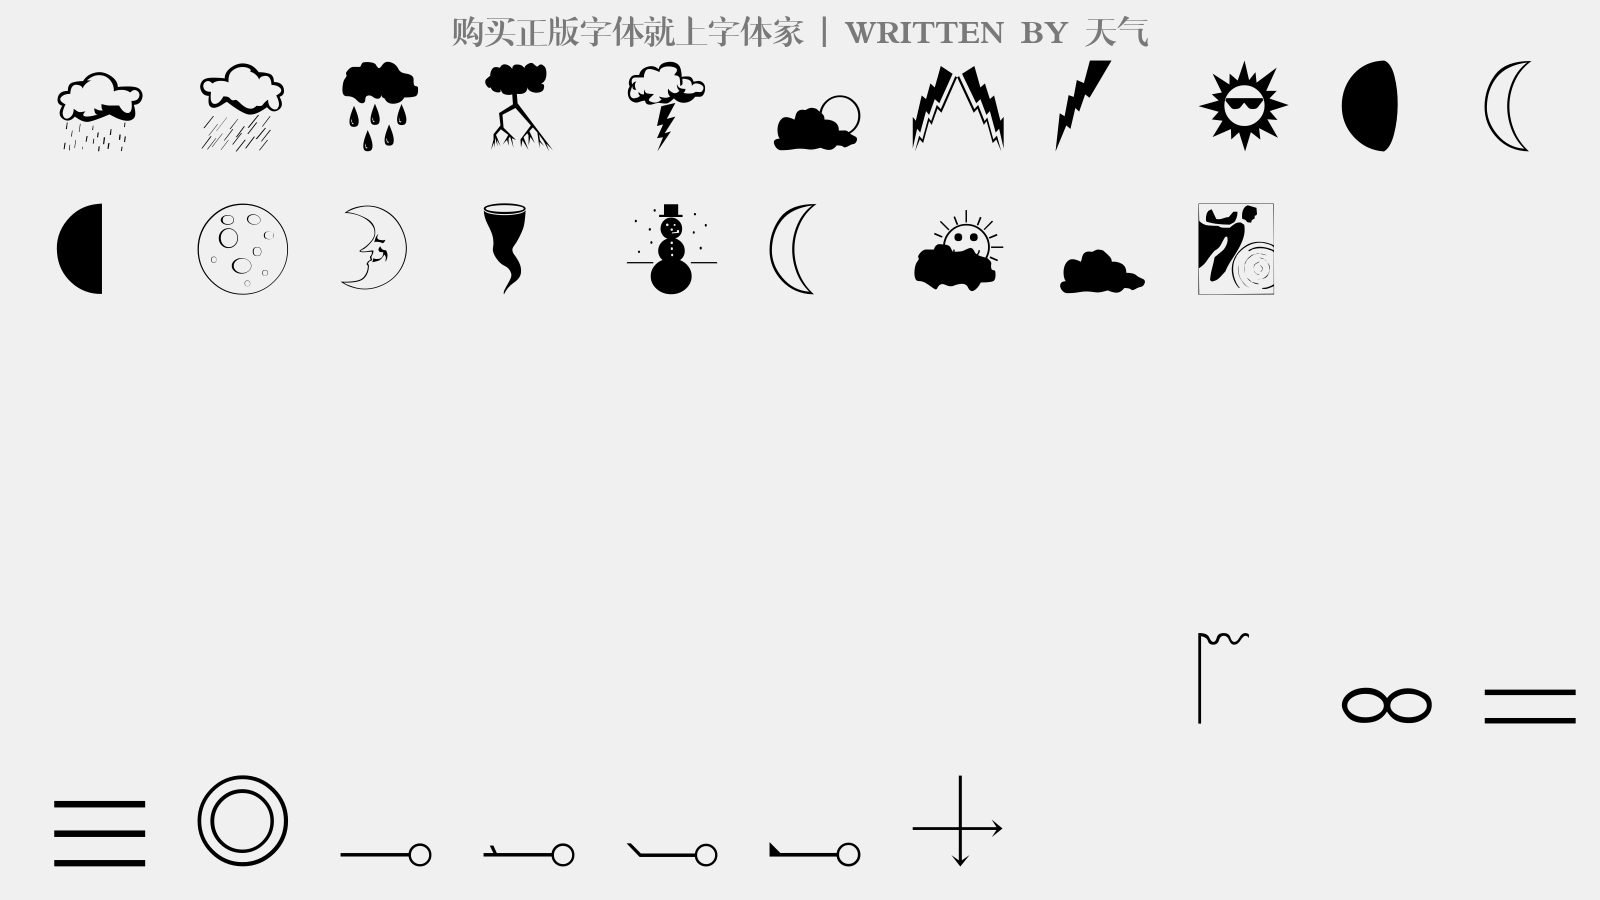 天气 - 大写字母/小写字母/数字